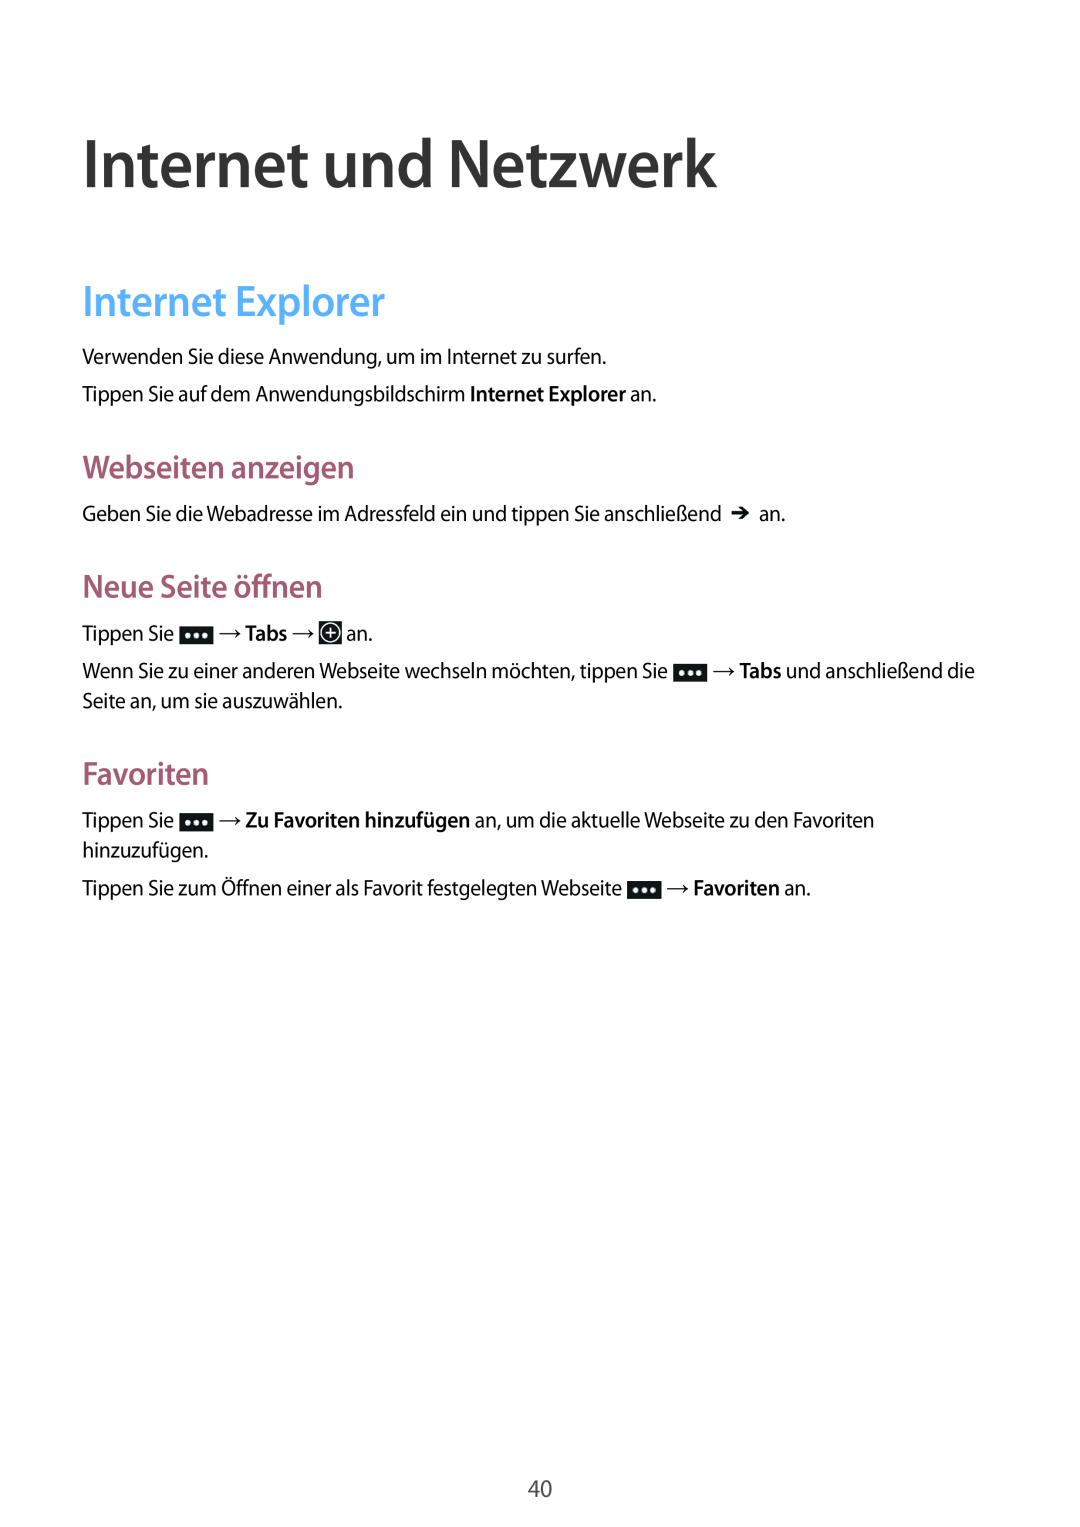 Samsung GT-I8750ALAATO manual Internet und Netzwerk, Internet Explorer, Webseiten anzeigen, Neue Seite öffnen, Favoriten 